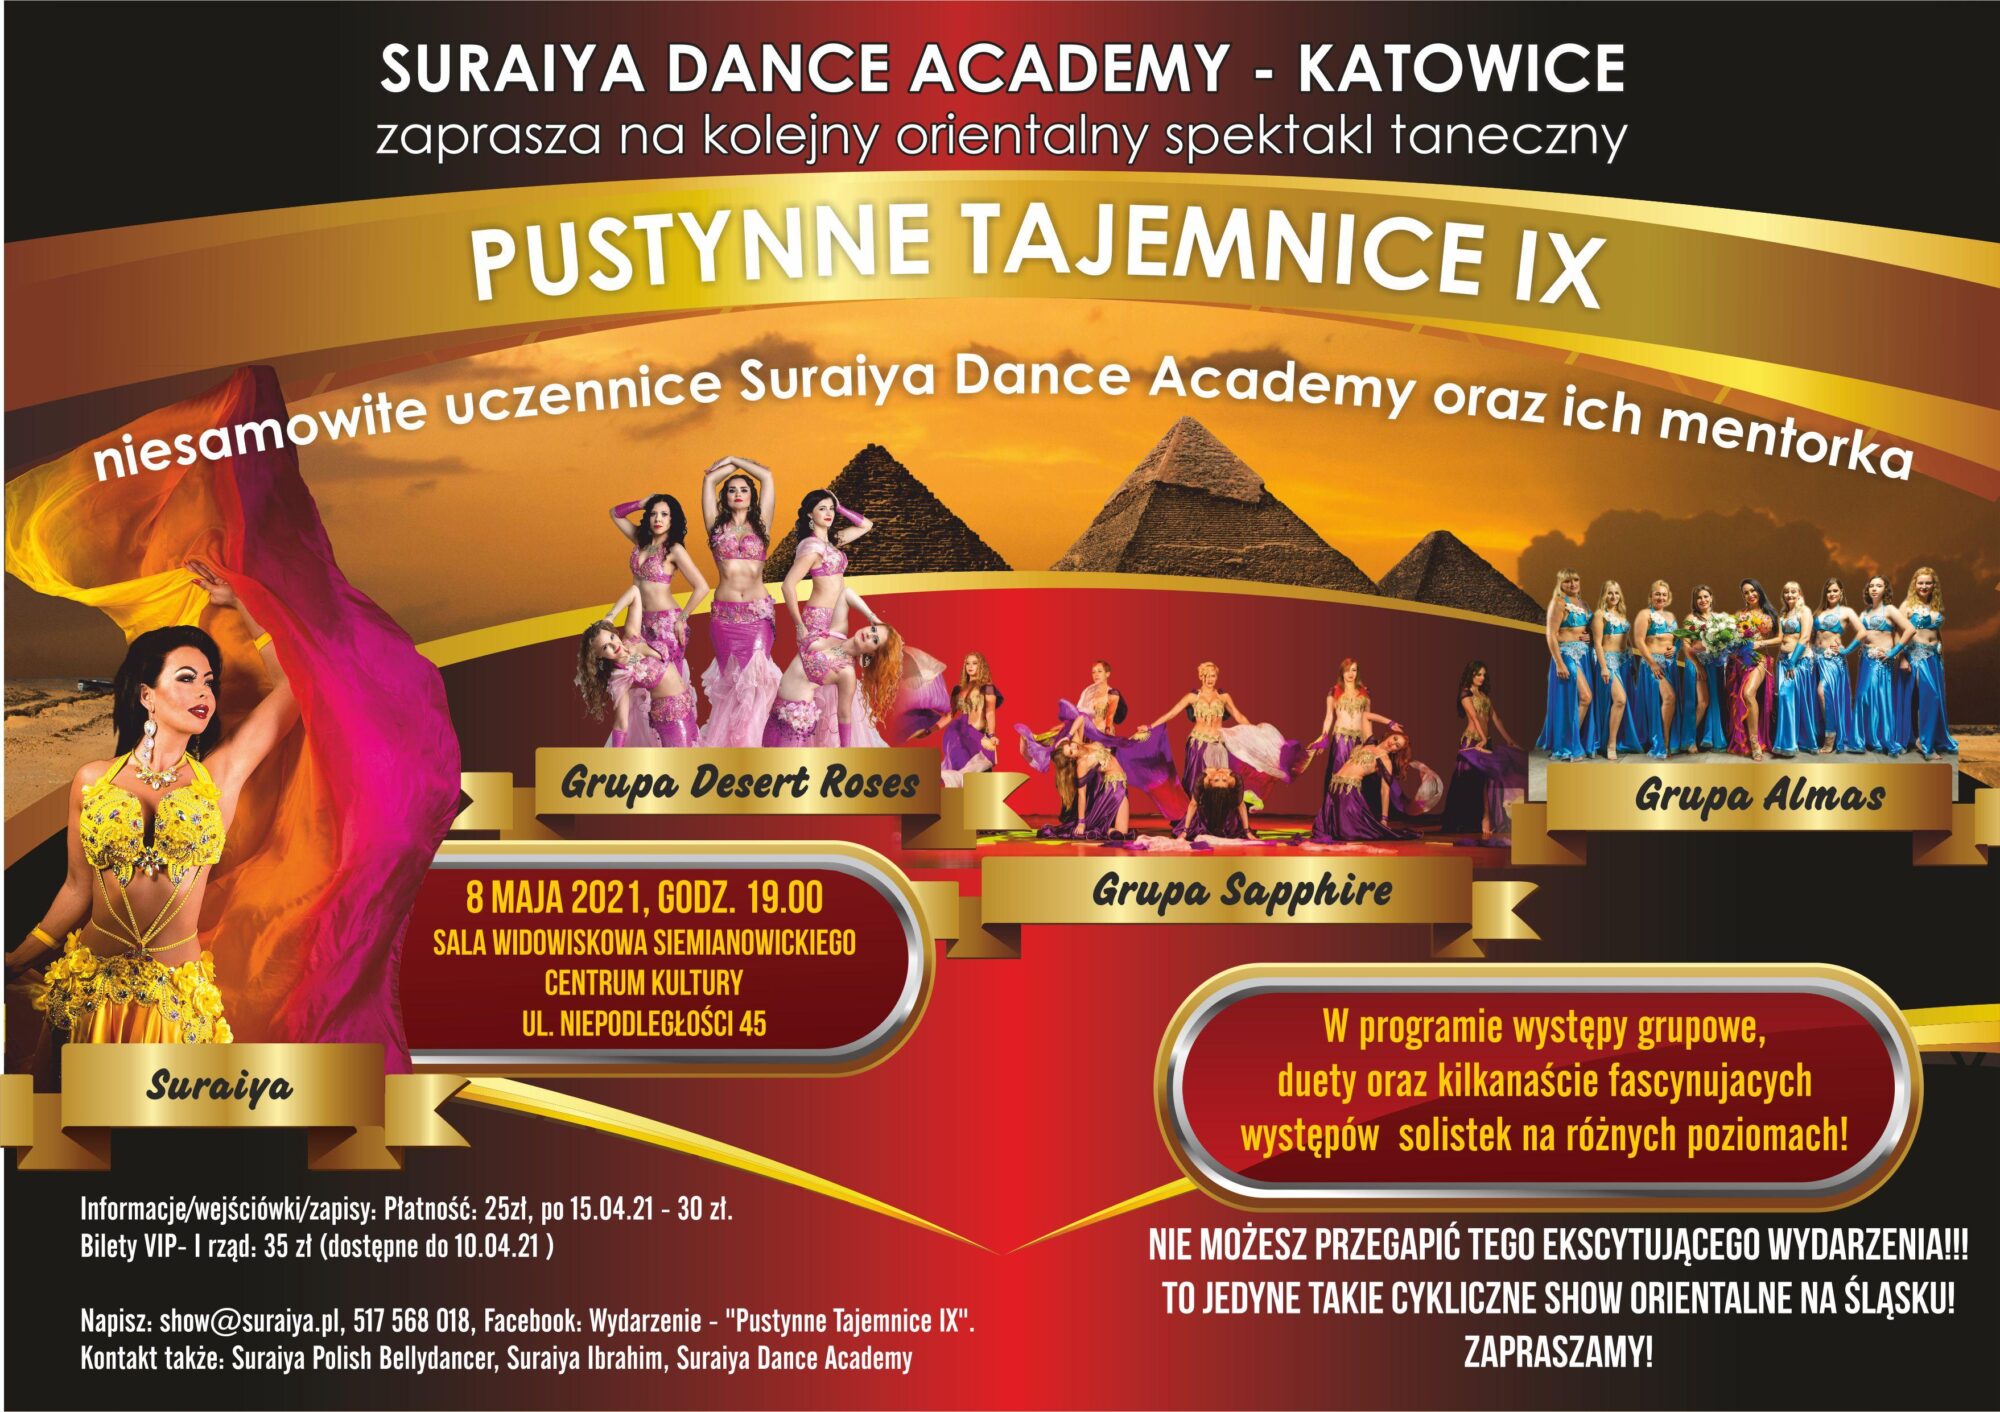 Kolorowy plakat spektaklu tanecznego Pustynne Tajemnice IX